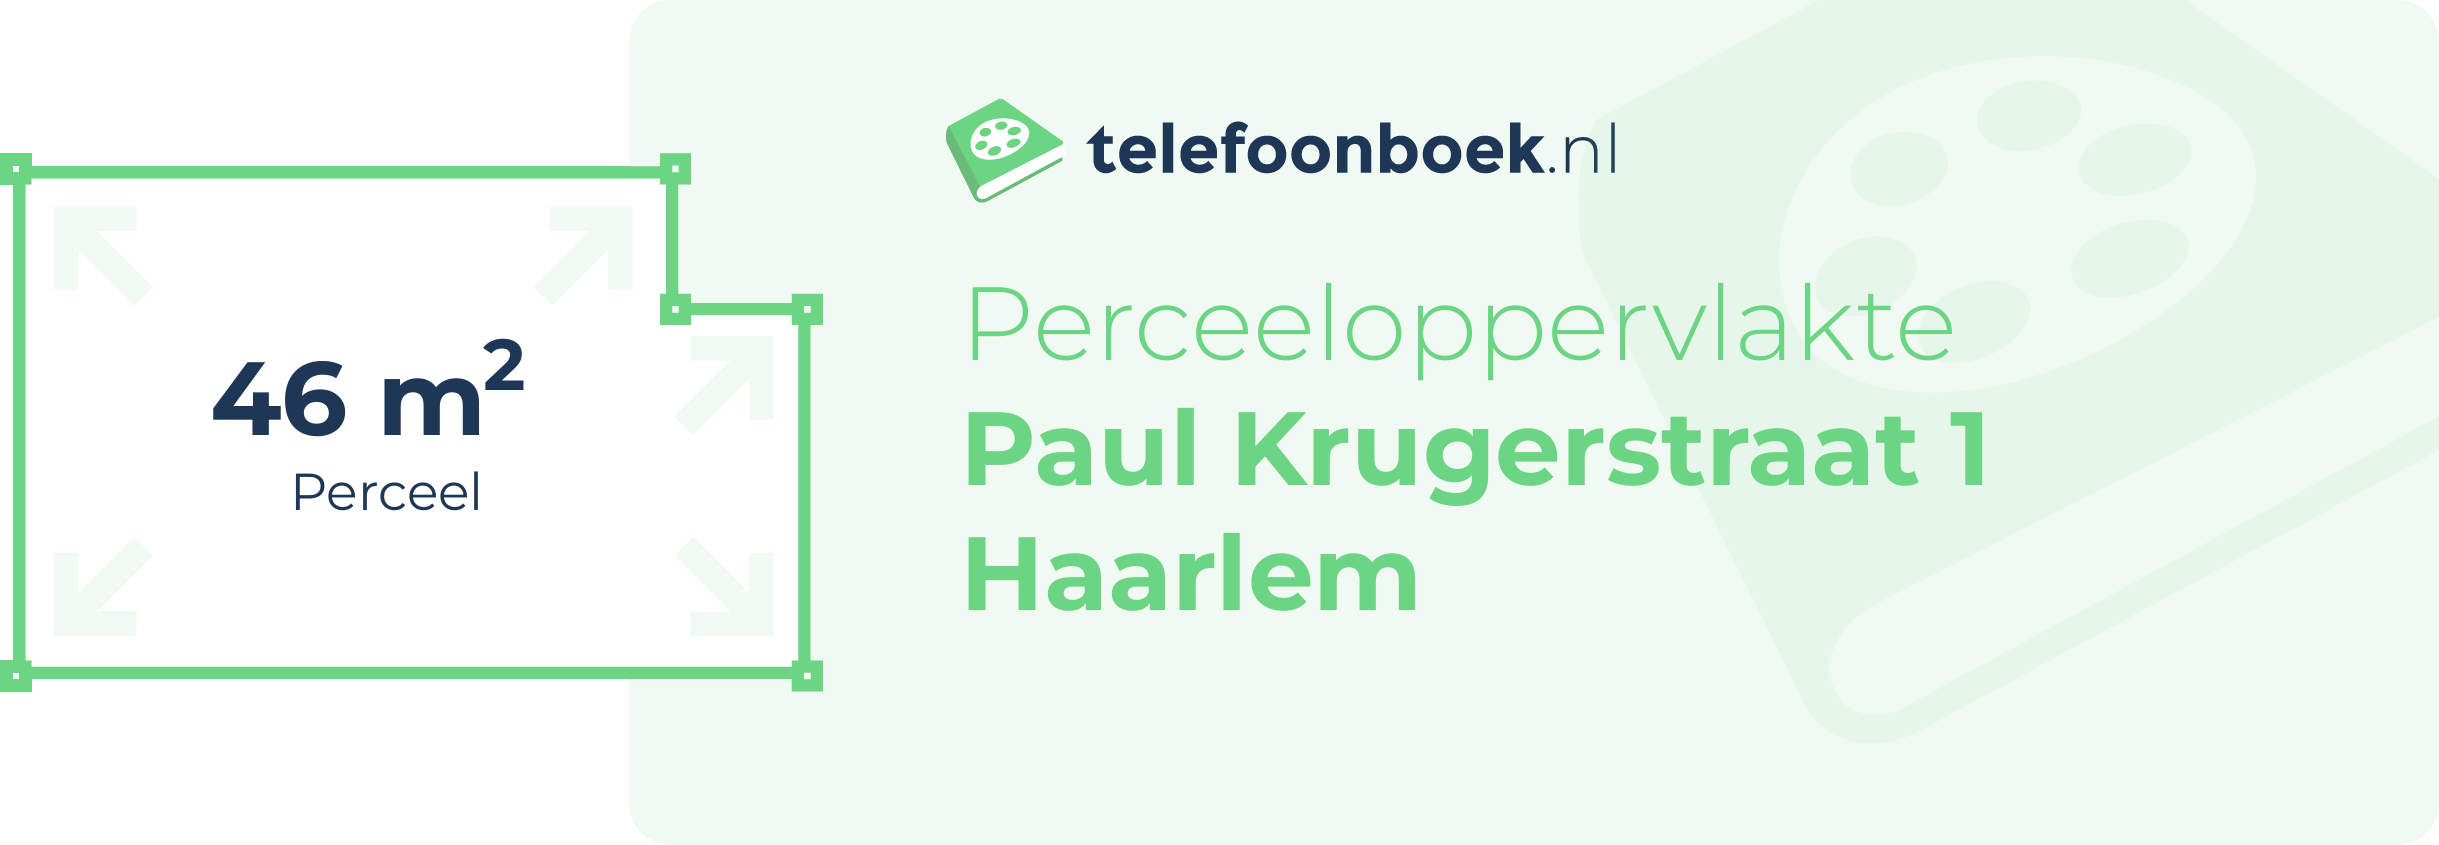 Perceeloppervlakte Paul Krugerstraat 1 Haarlem